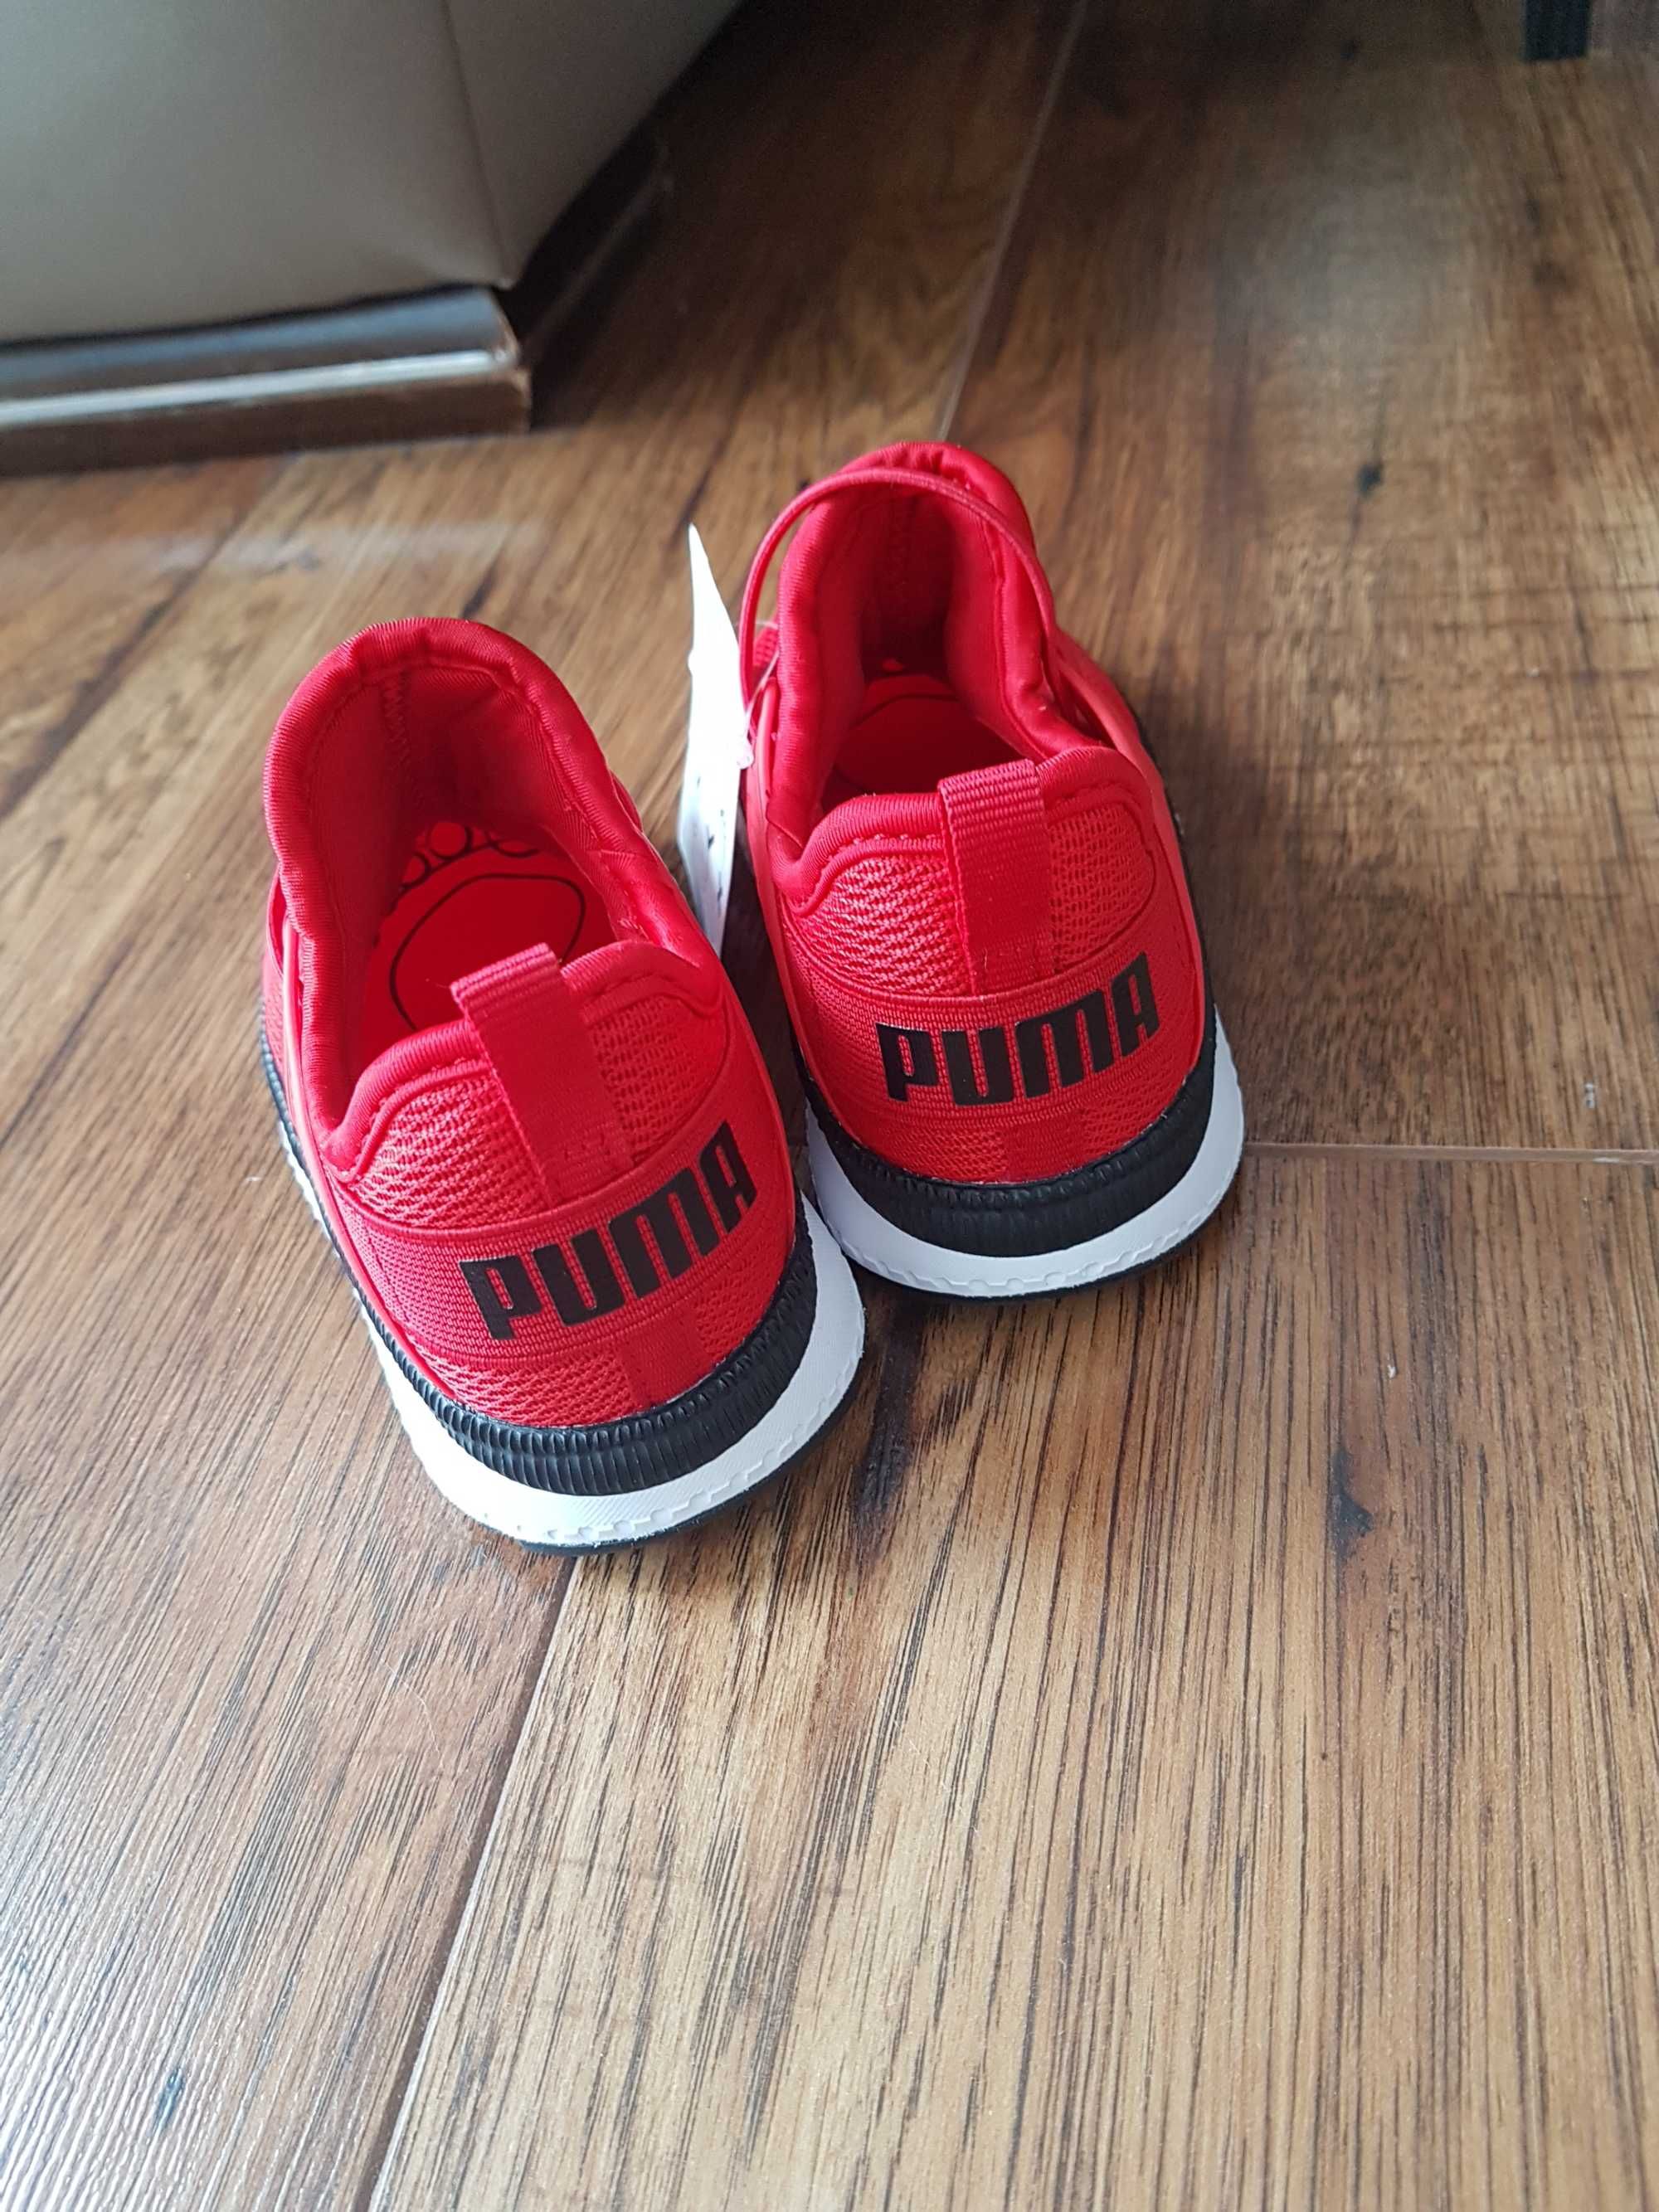 Buty Puma r. 25 czerwone